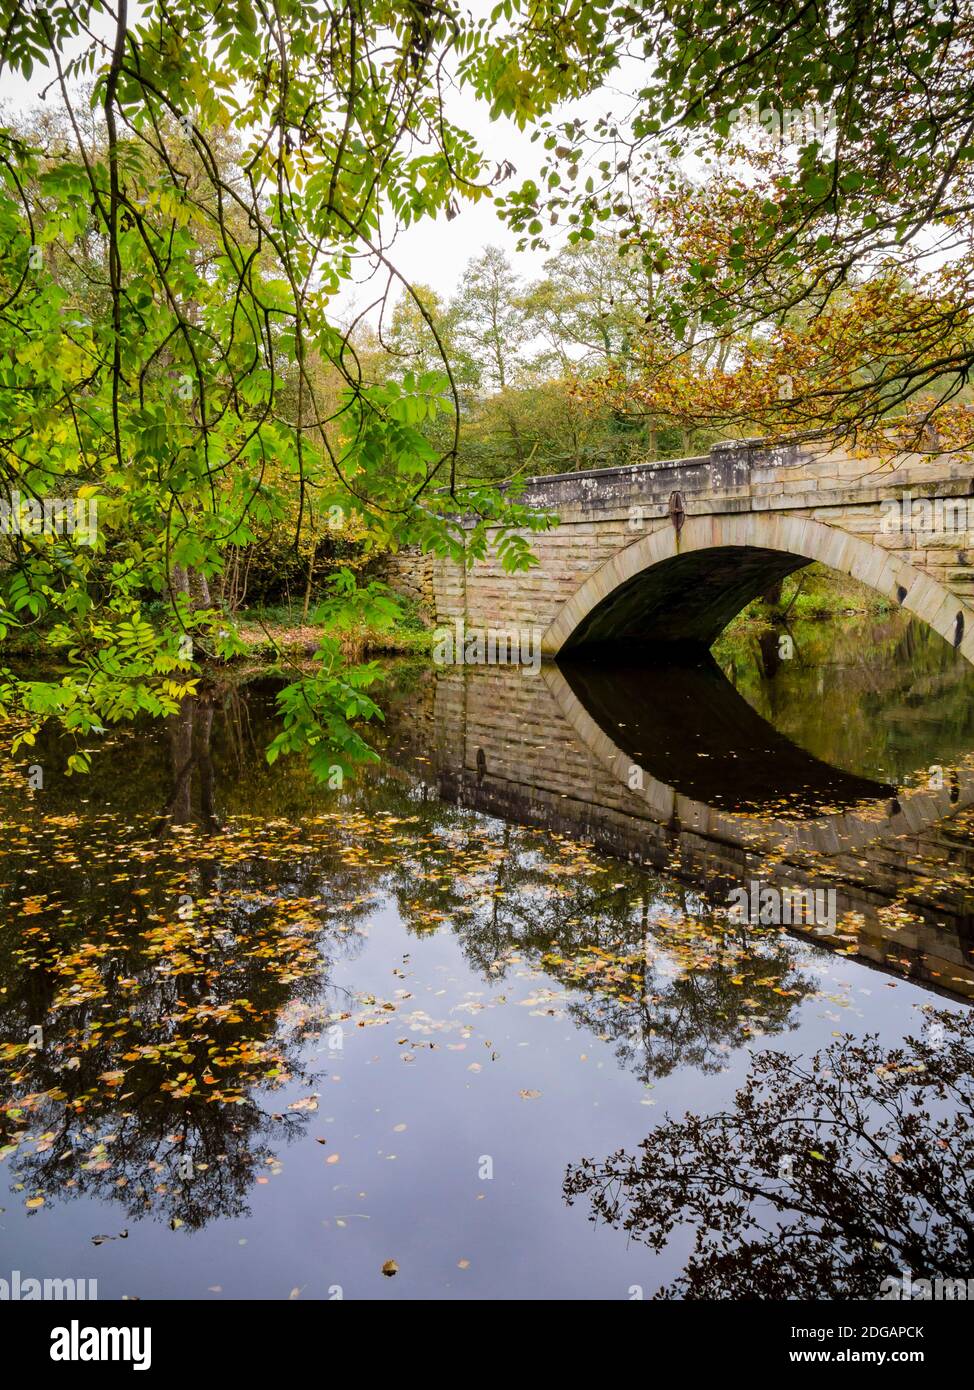 Pont reflété dans les eaux calmes de la rivière Derwent Près de Froggatt dans le parc national de Peak District Derbyshire England ROYAUME-UNI Banque D'Images